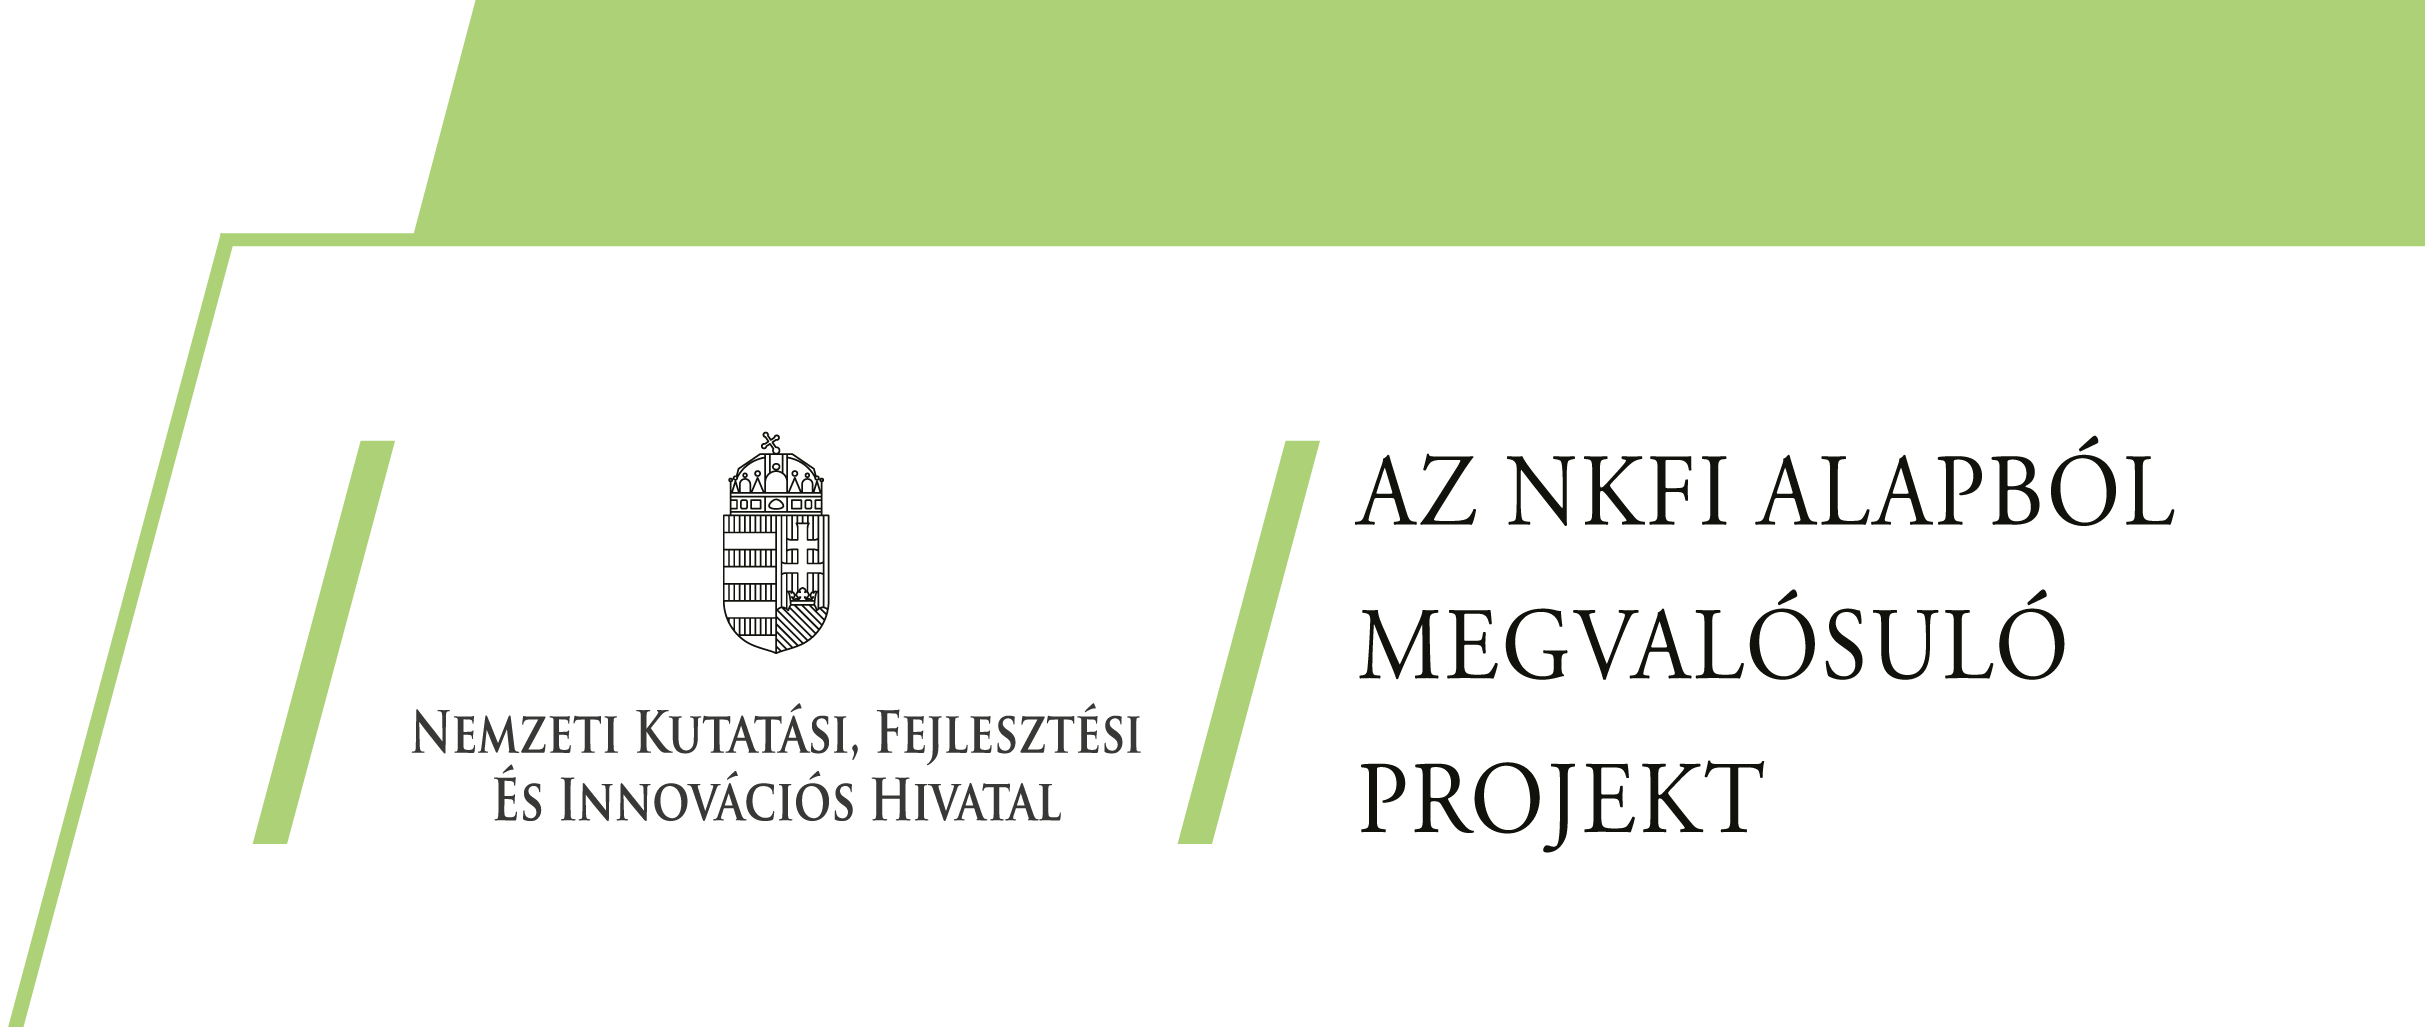 Nemzeti Kutatási, Fejlesztési és Információs Hivatal - Az NKFI alapból megvalósuló projekt